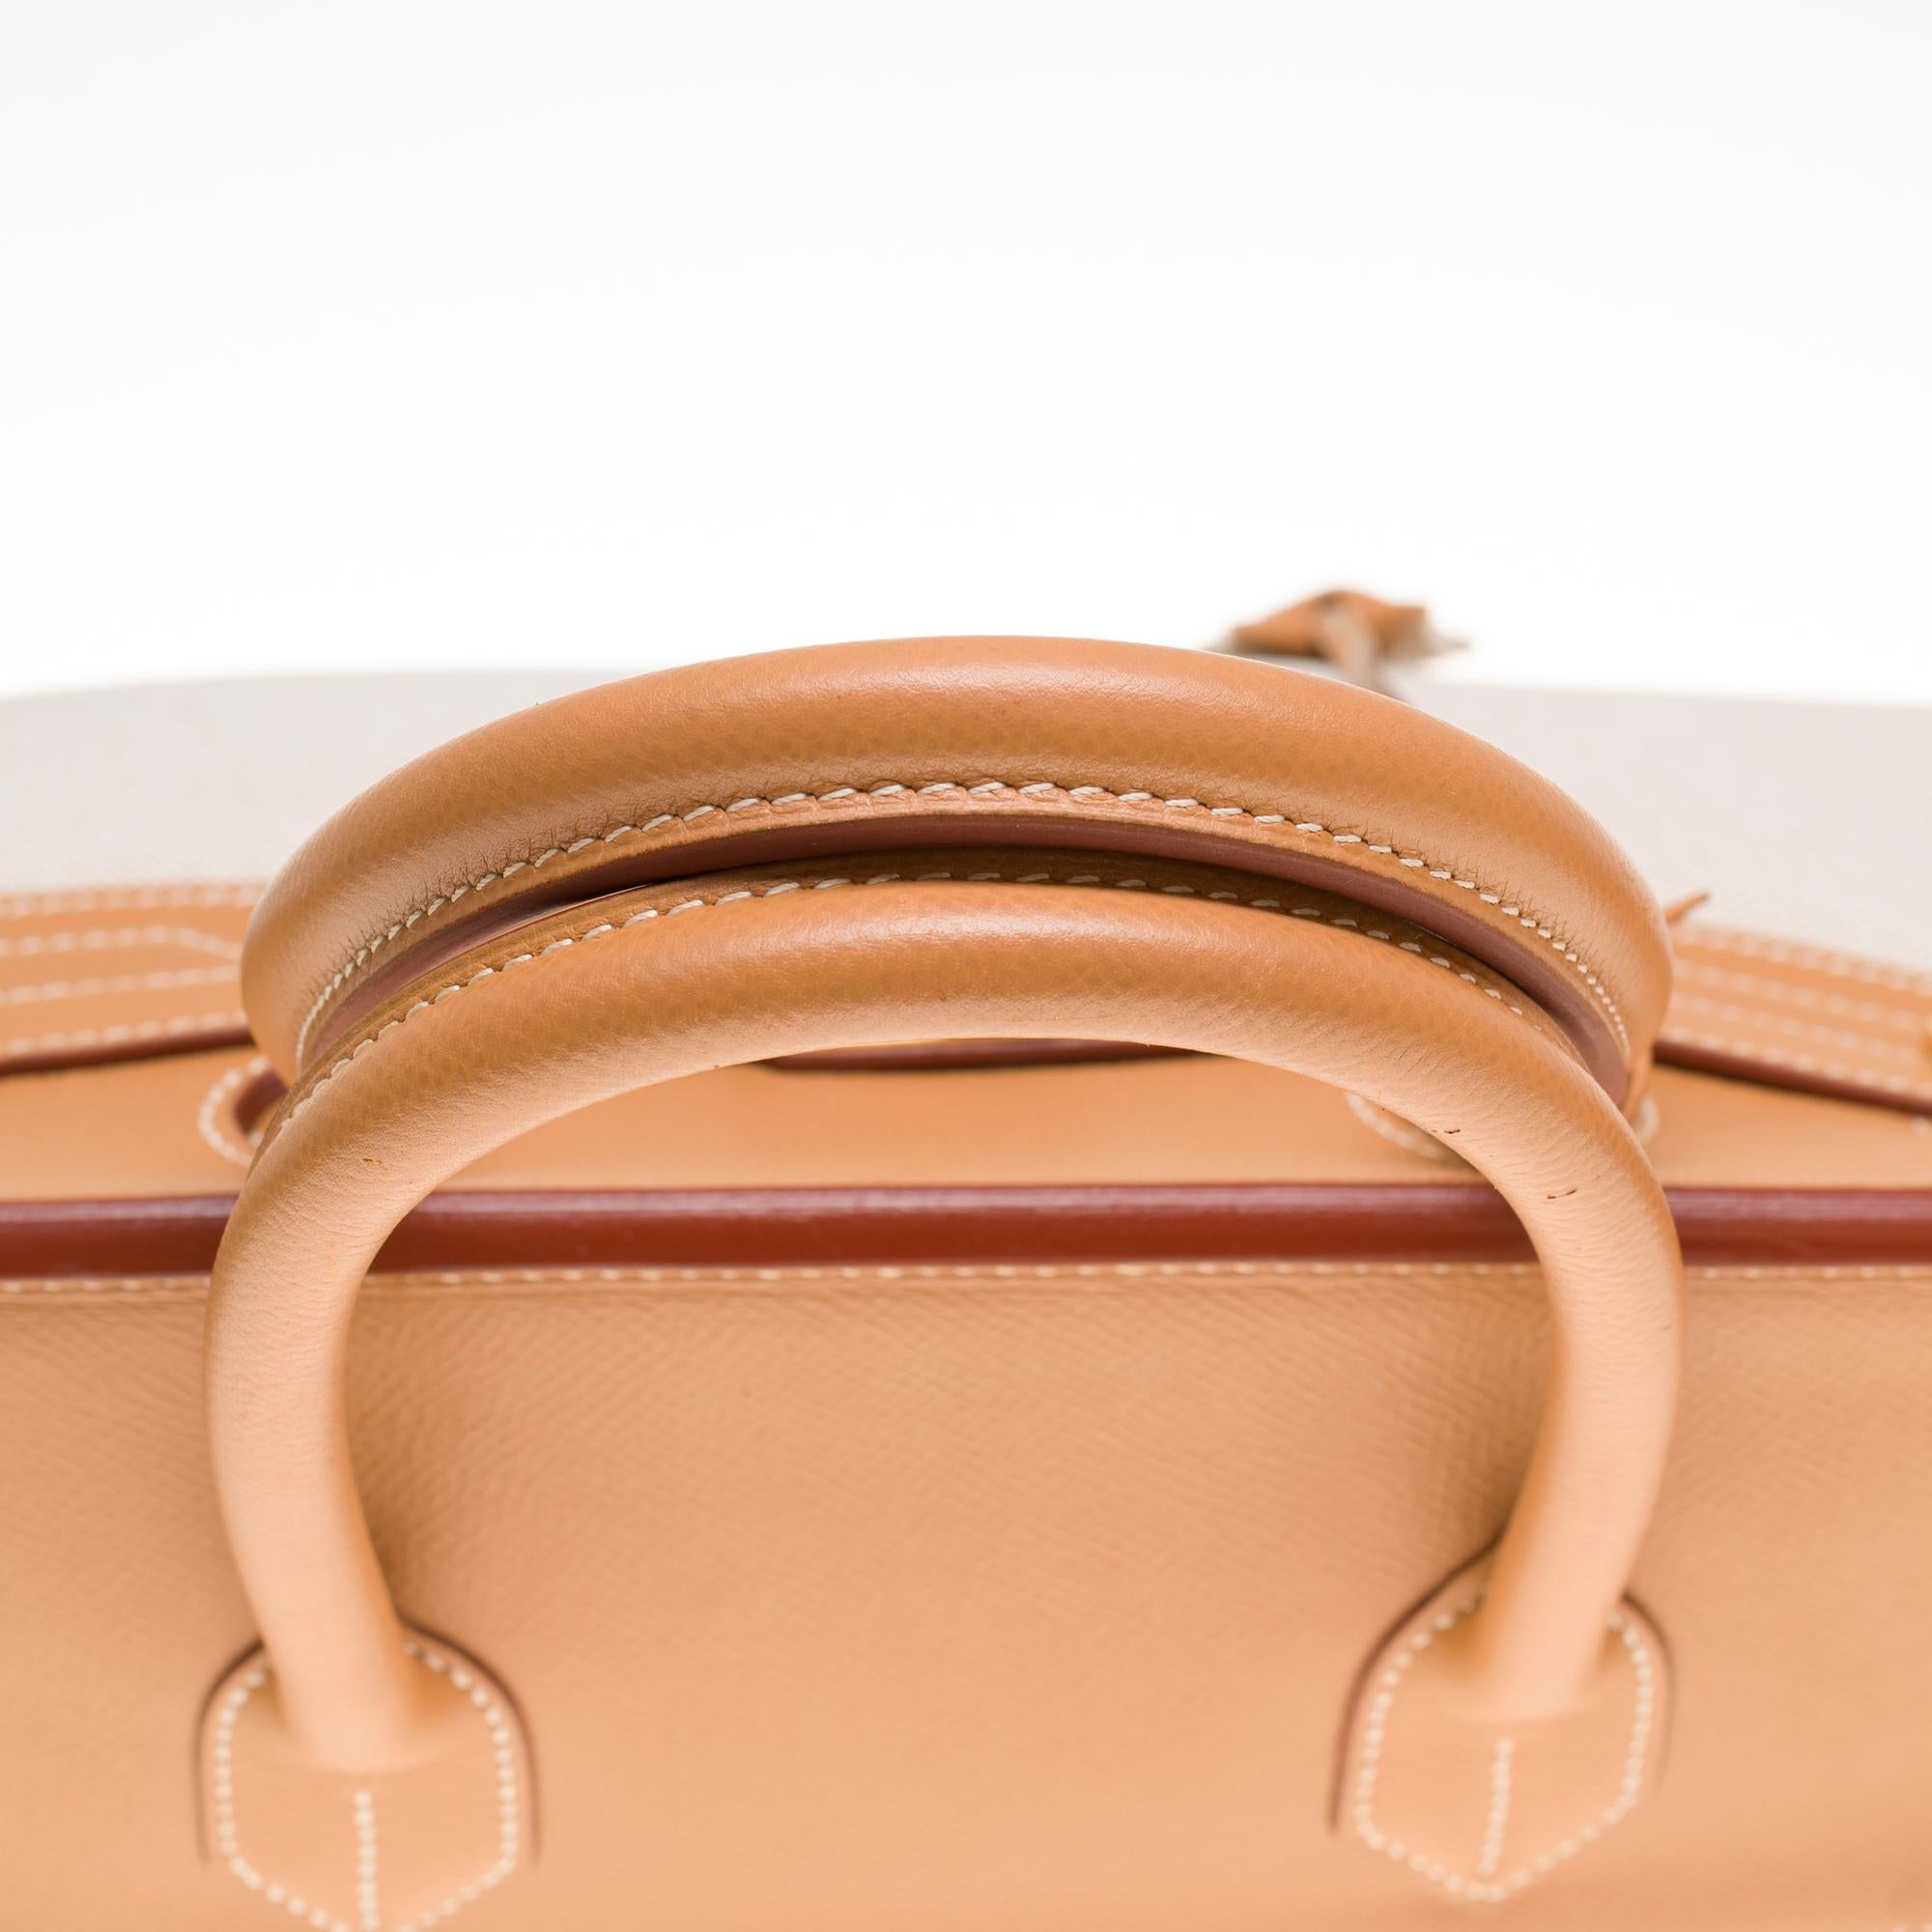 Women's Rare Hermès Birkin 35 handbag in beige canvas and Gold Courchevel leather, GHW